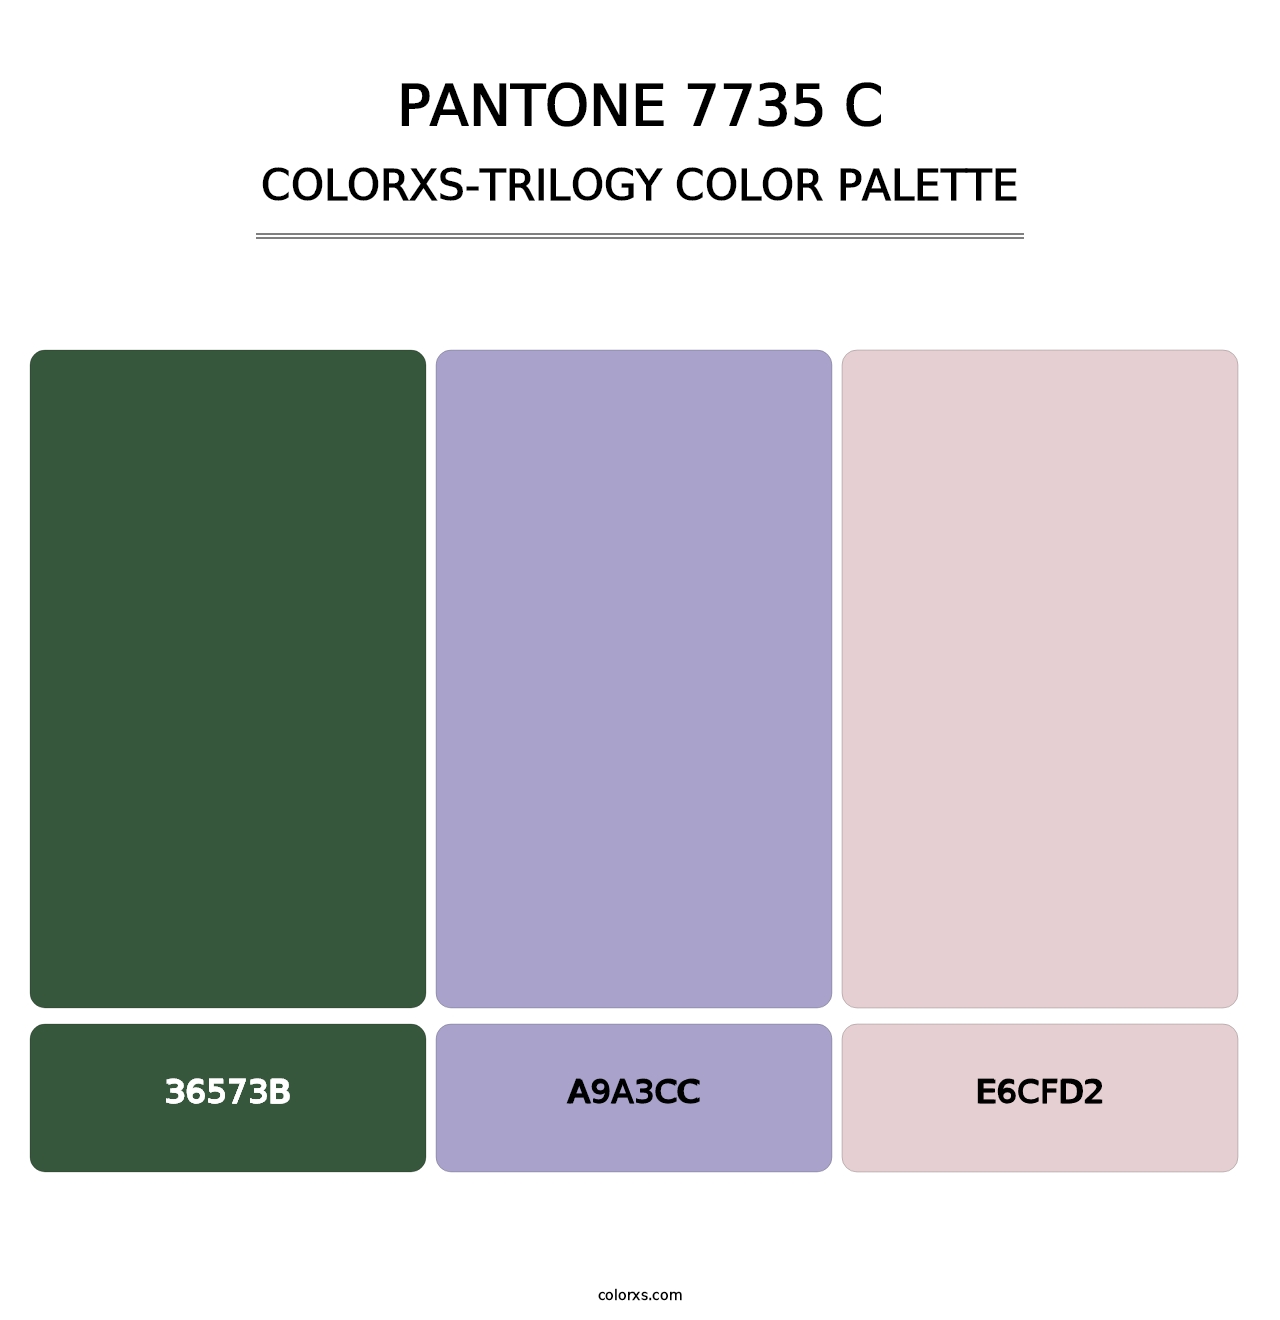 PANTONE 7735 C - Colorxs Trilogy Palette